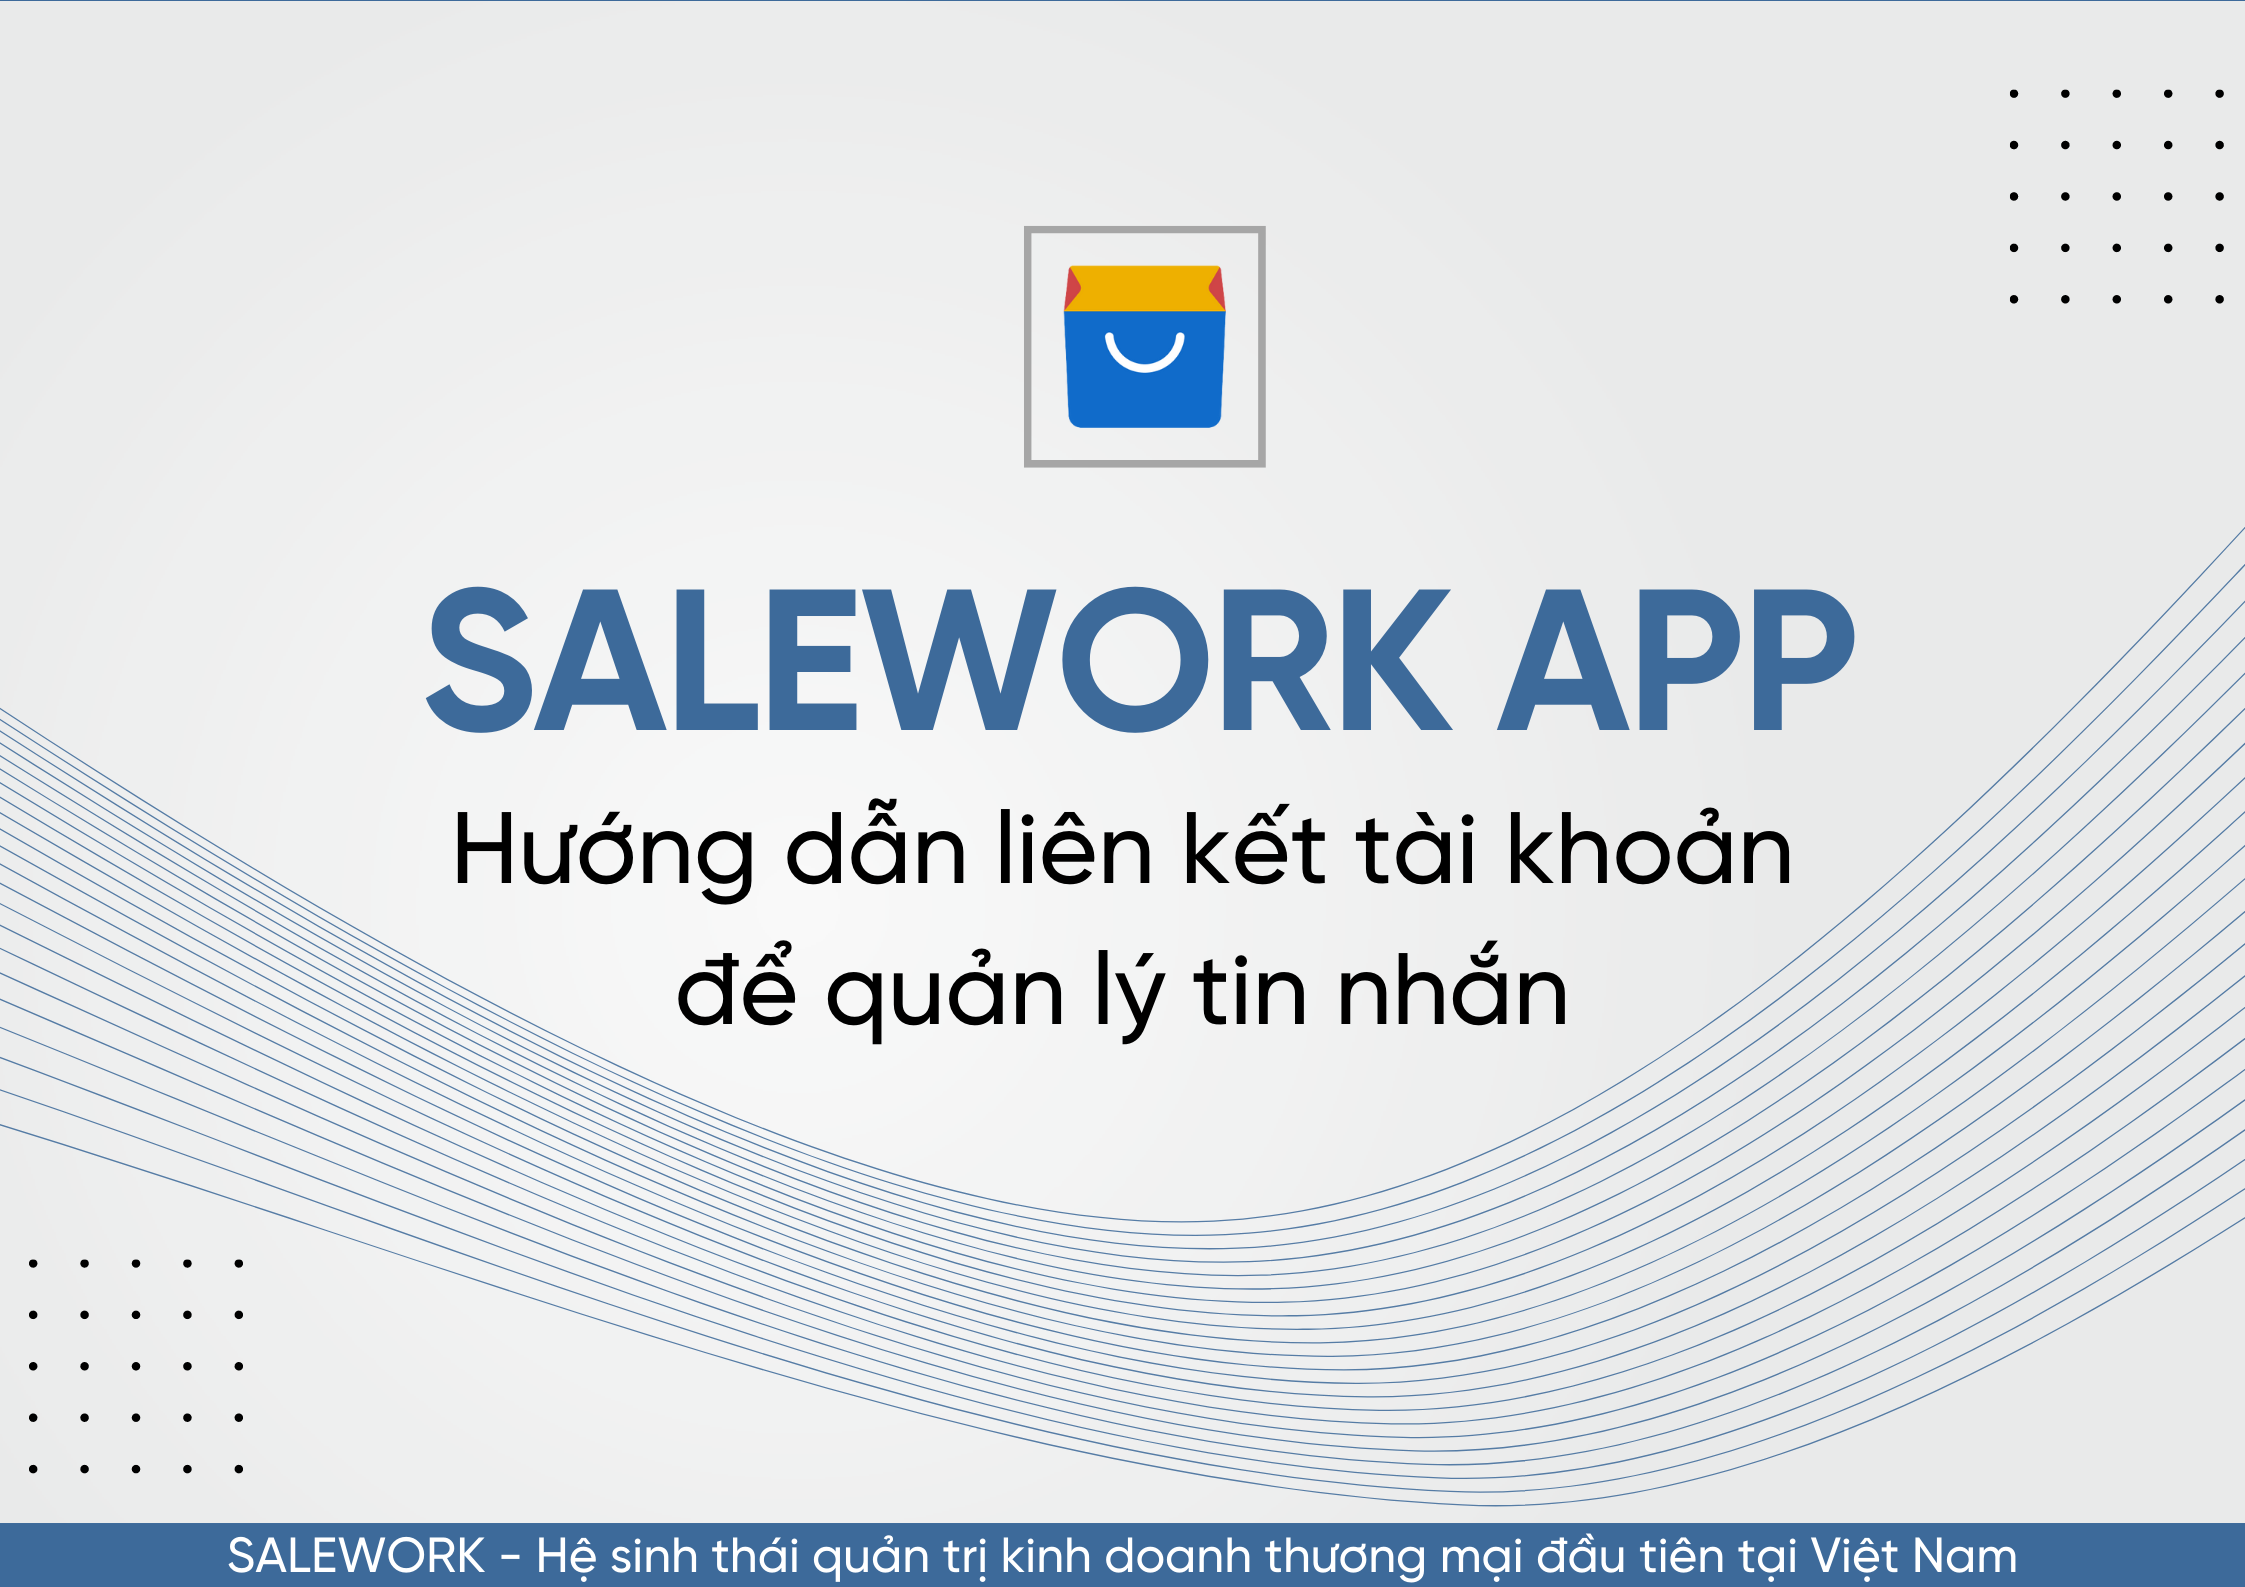 Hướng dẫn liên kết tài khoản để quản lý tin nhắn qua Salework Mobile - 60